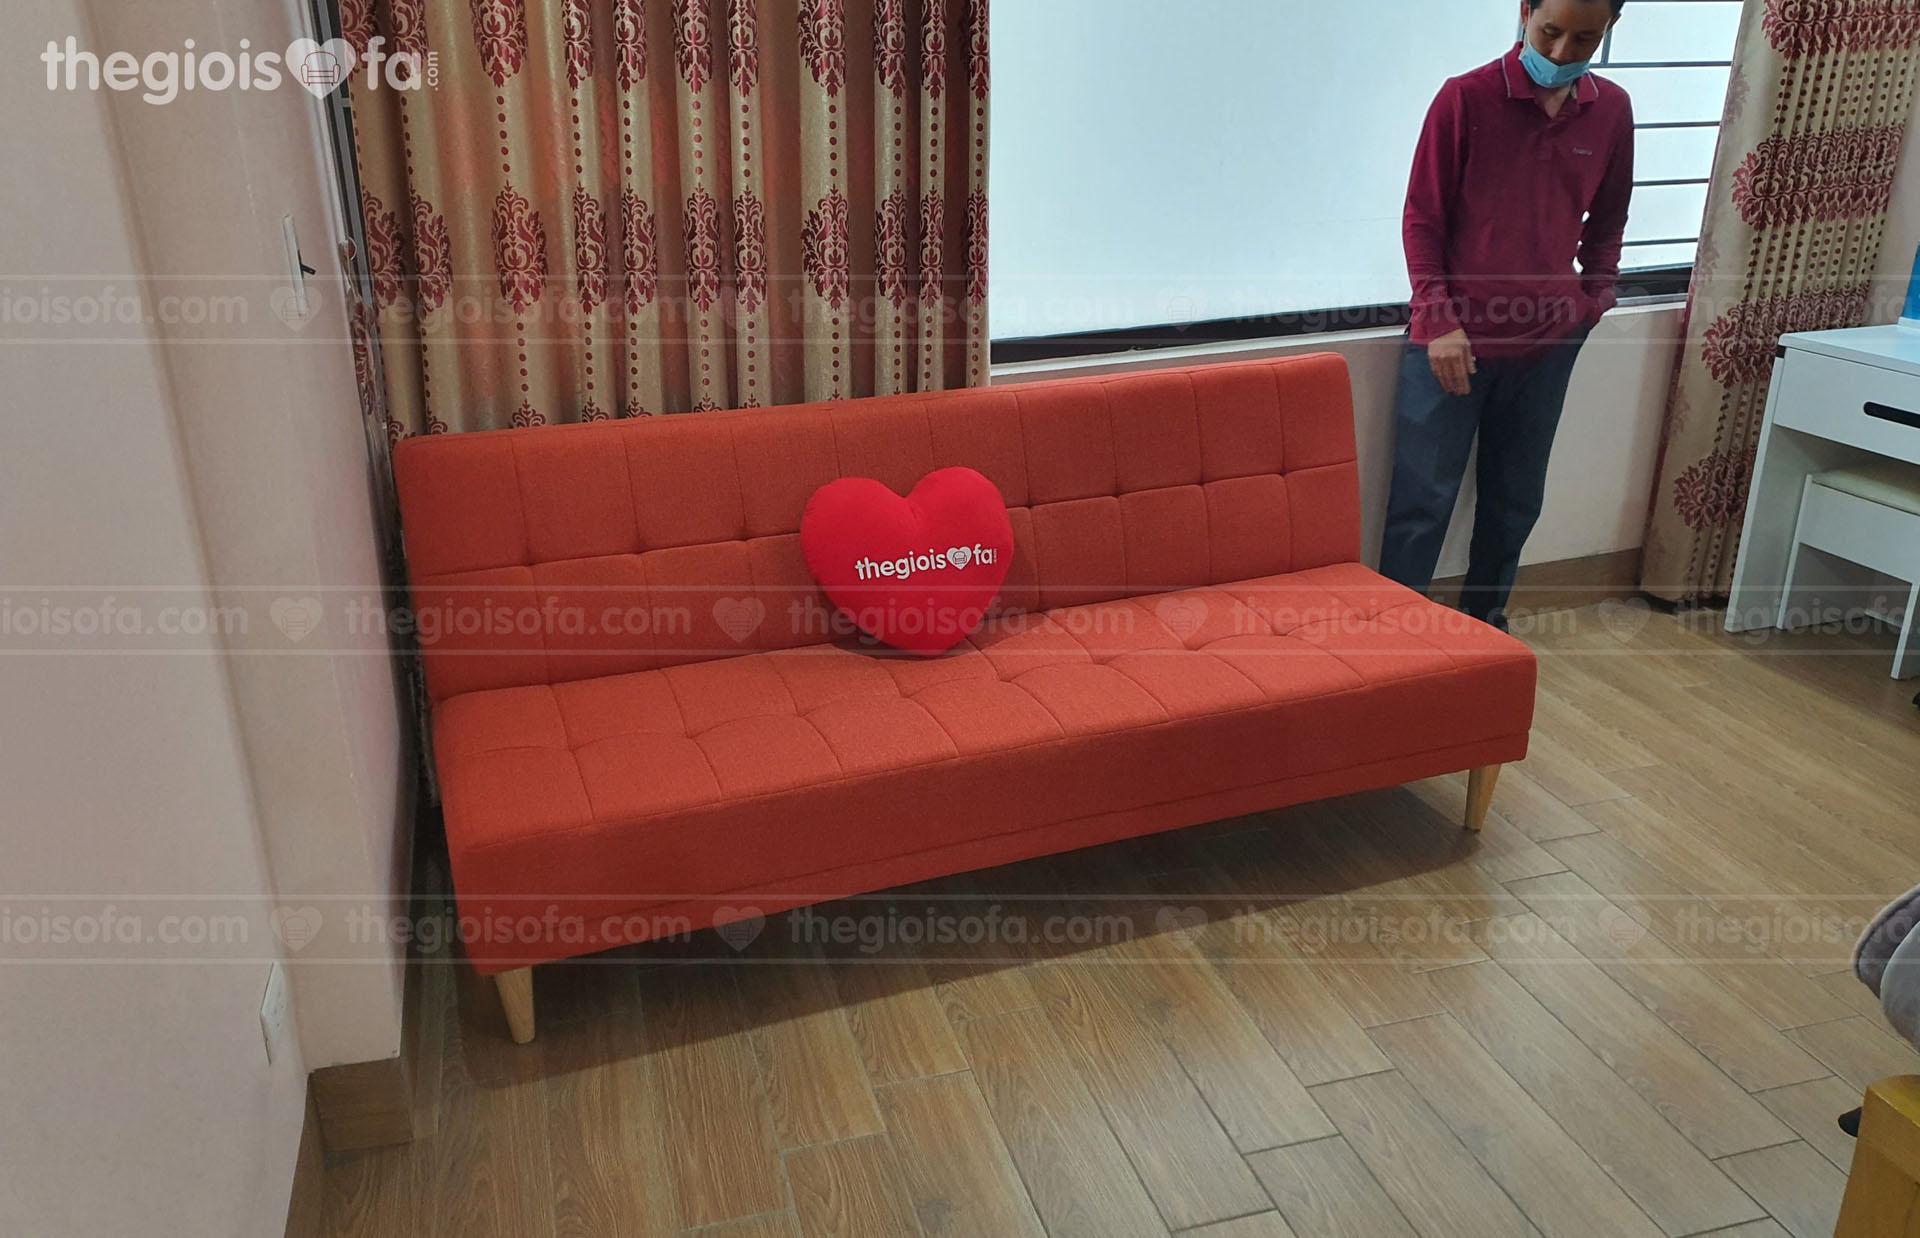 Giao hàng sofa giường vải màu cam Sofaland vera cho chị Hương tại 98 Đàm Quang Trung – Mua sofa Quận Long Biên